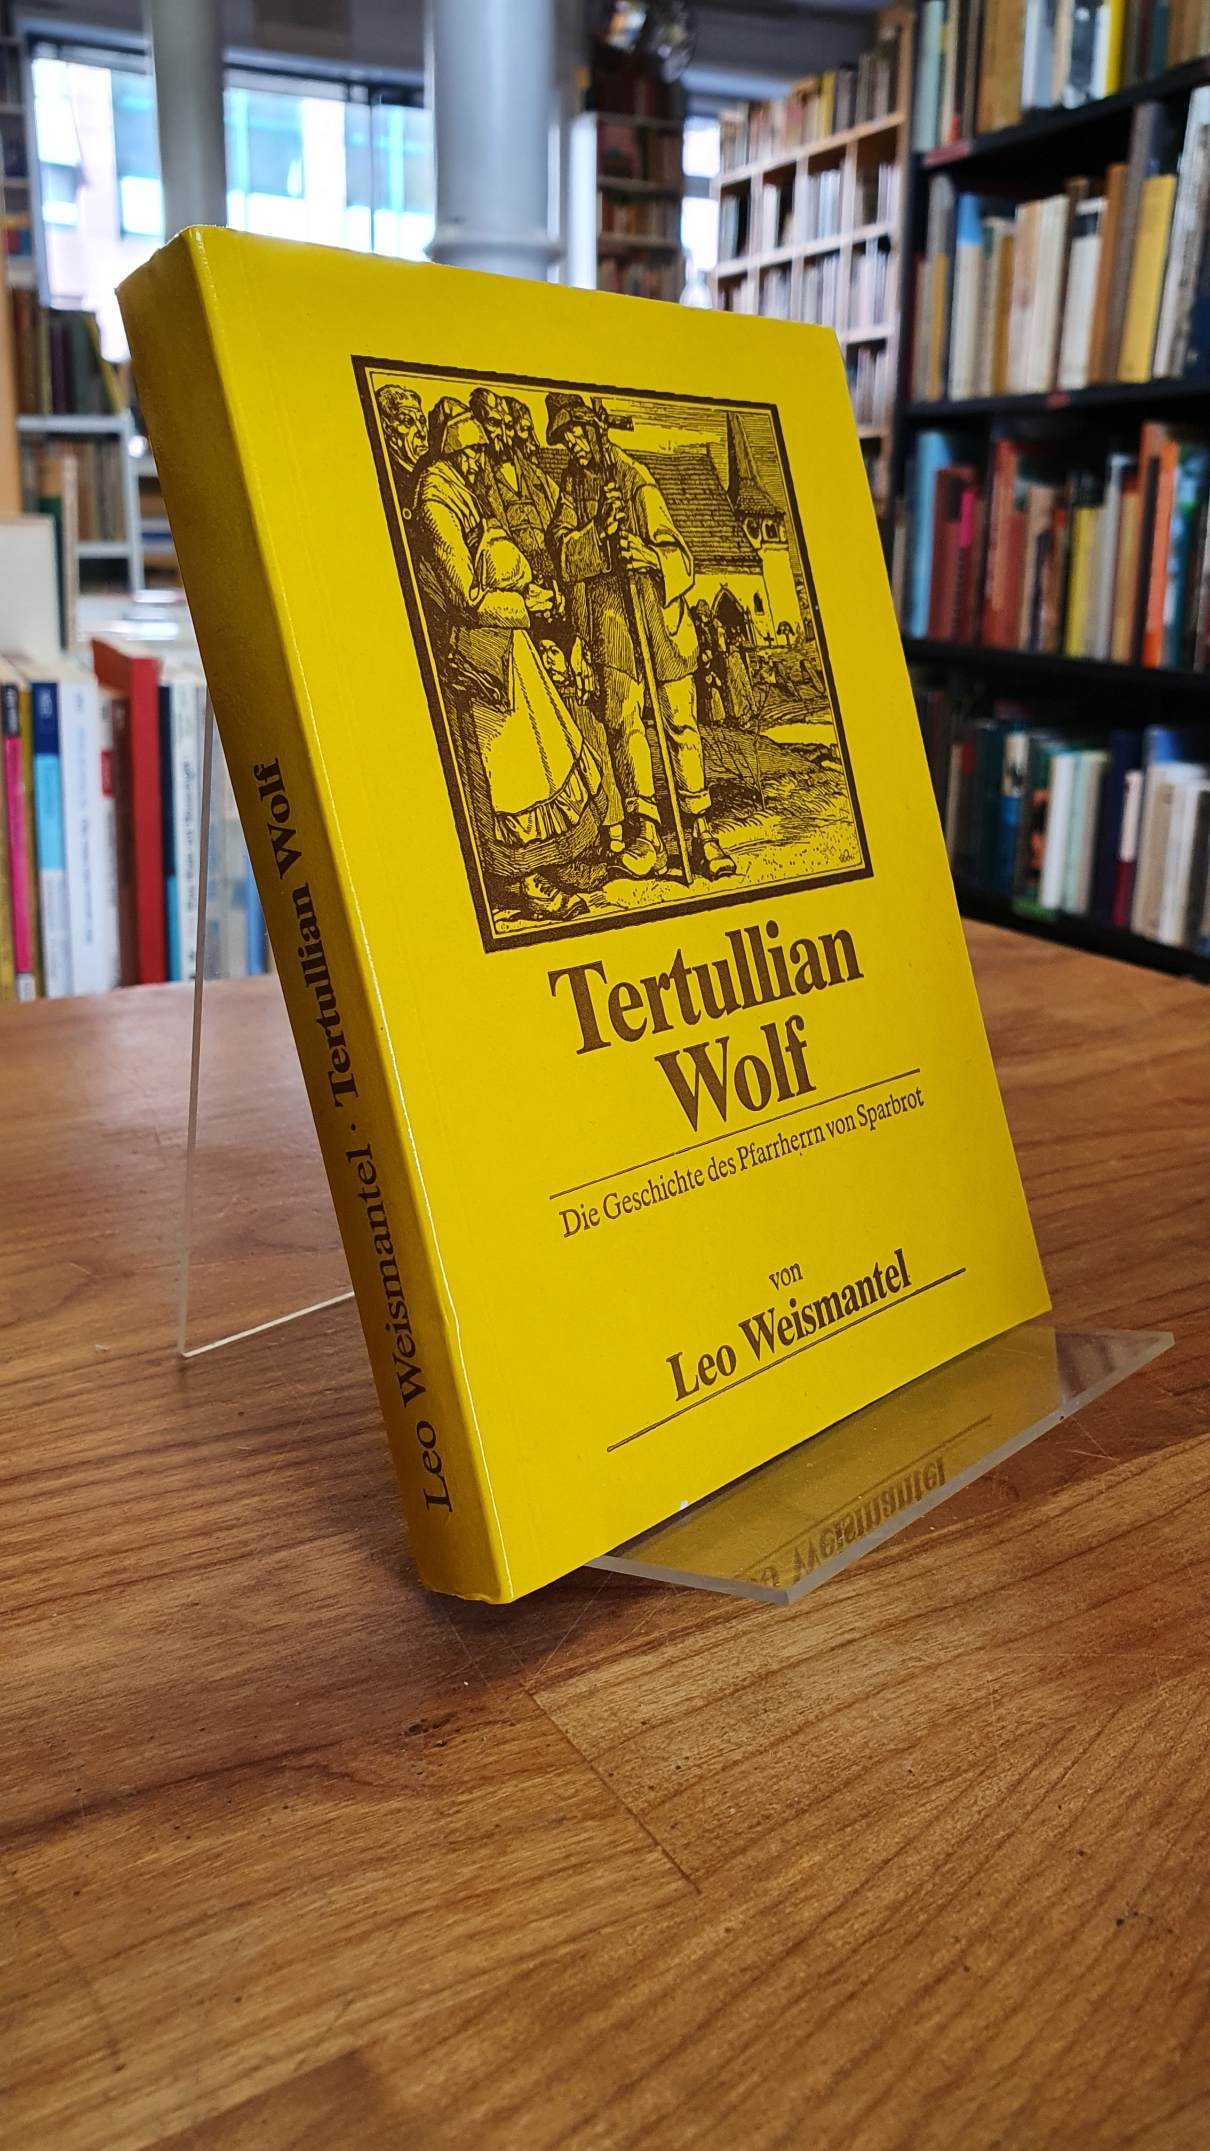 Weismantel, Tertullian Wolf – Die Geschichte des Pfarrherrn von Sparbrot,